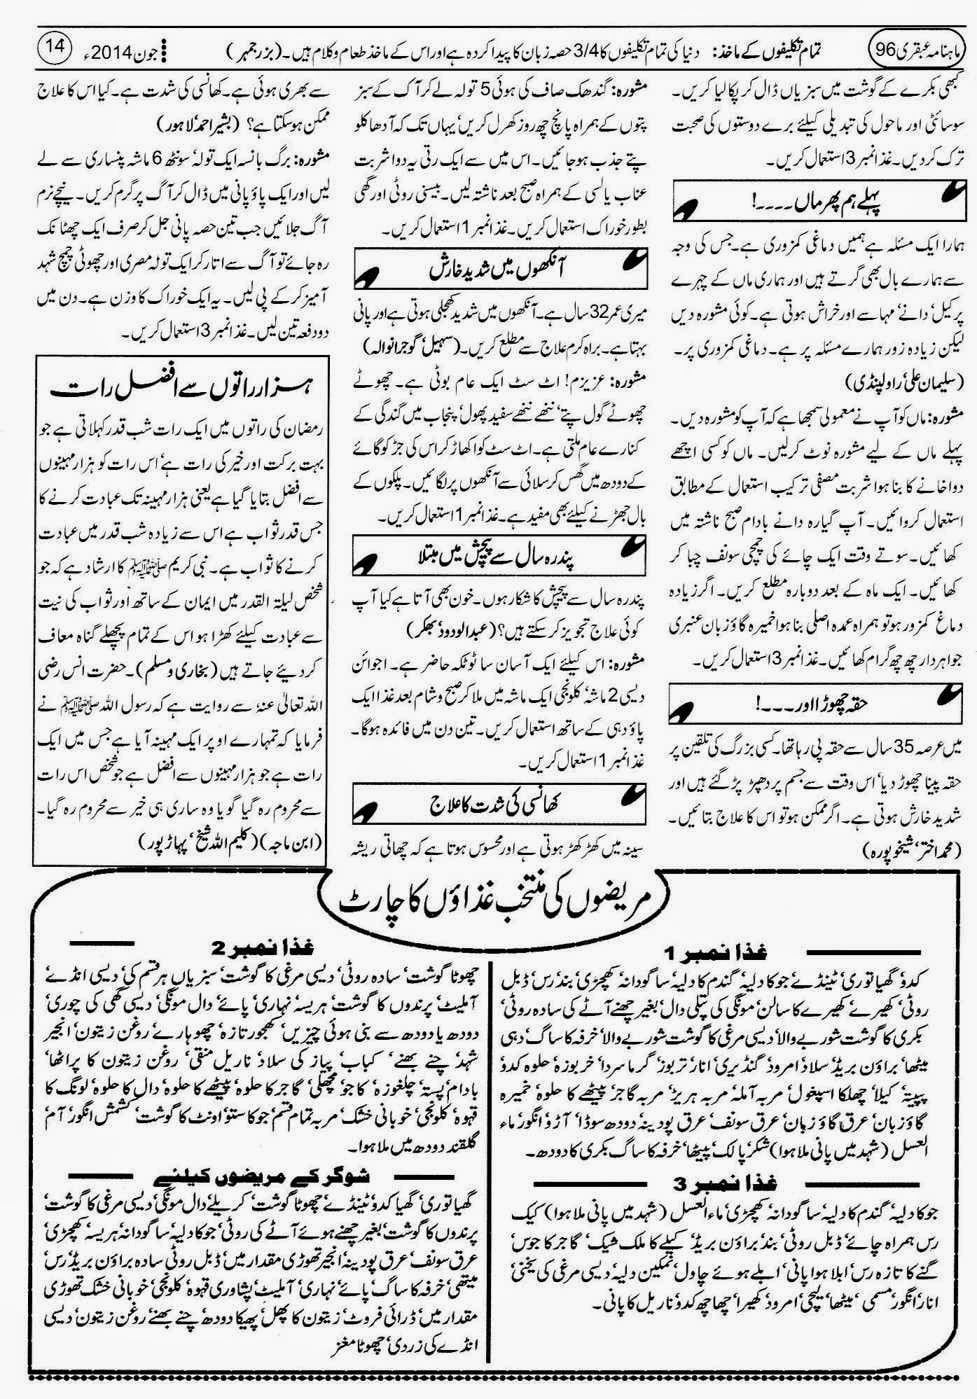 ubqari june 2014 page 14